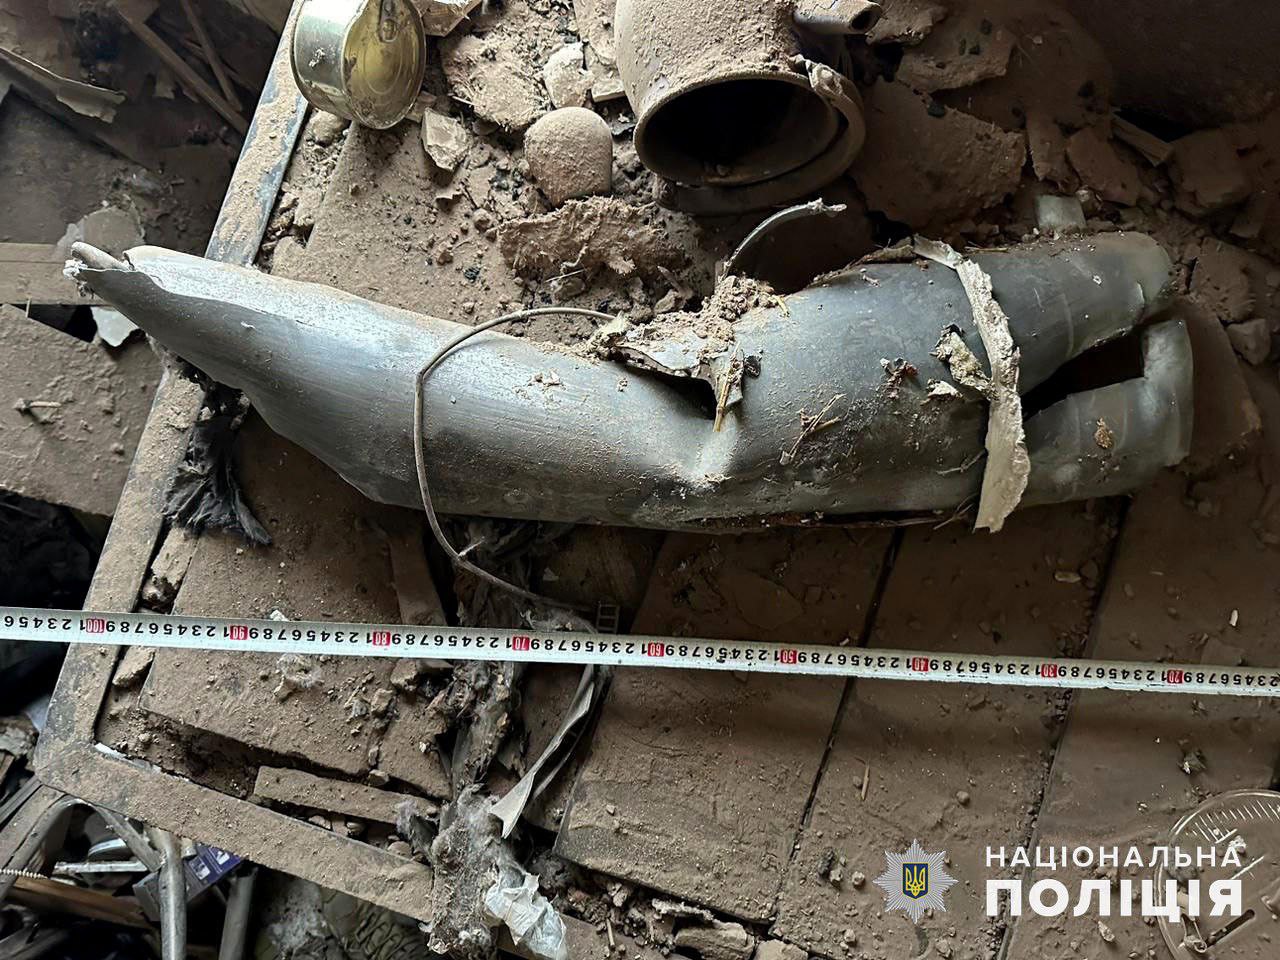 Залишки снаряда, який запустили на голови цивільних жителів Донеччини